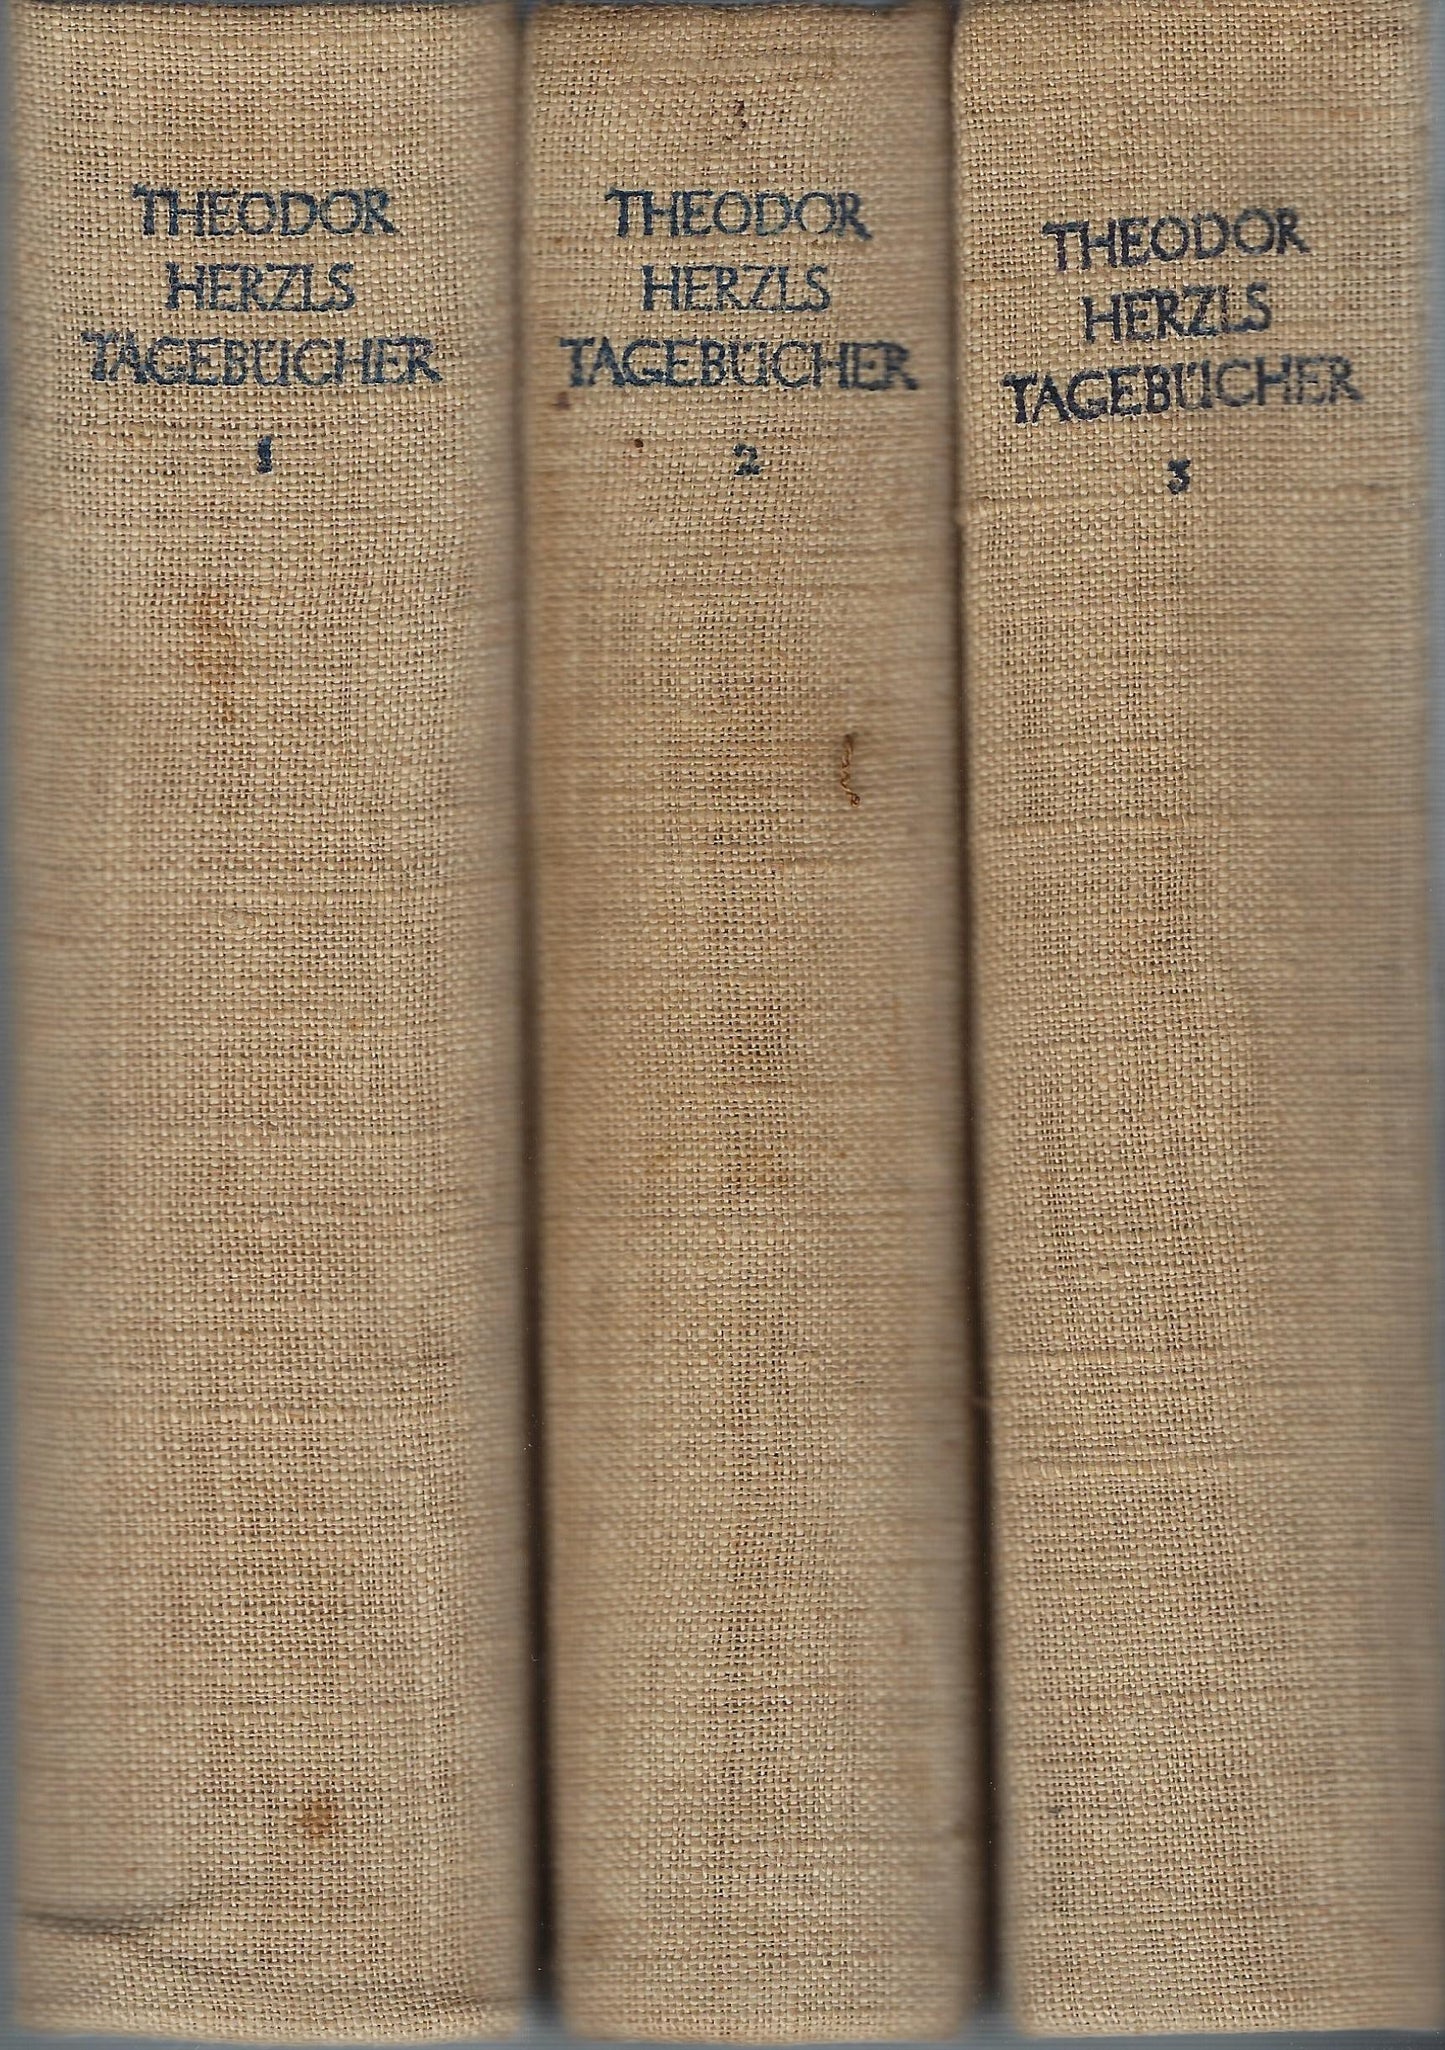 Theodor Herzls Tagebücher (3 delen compleet)